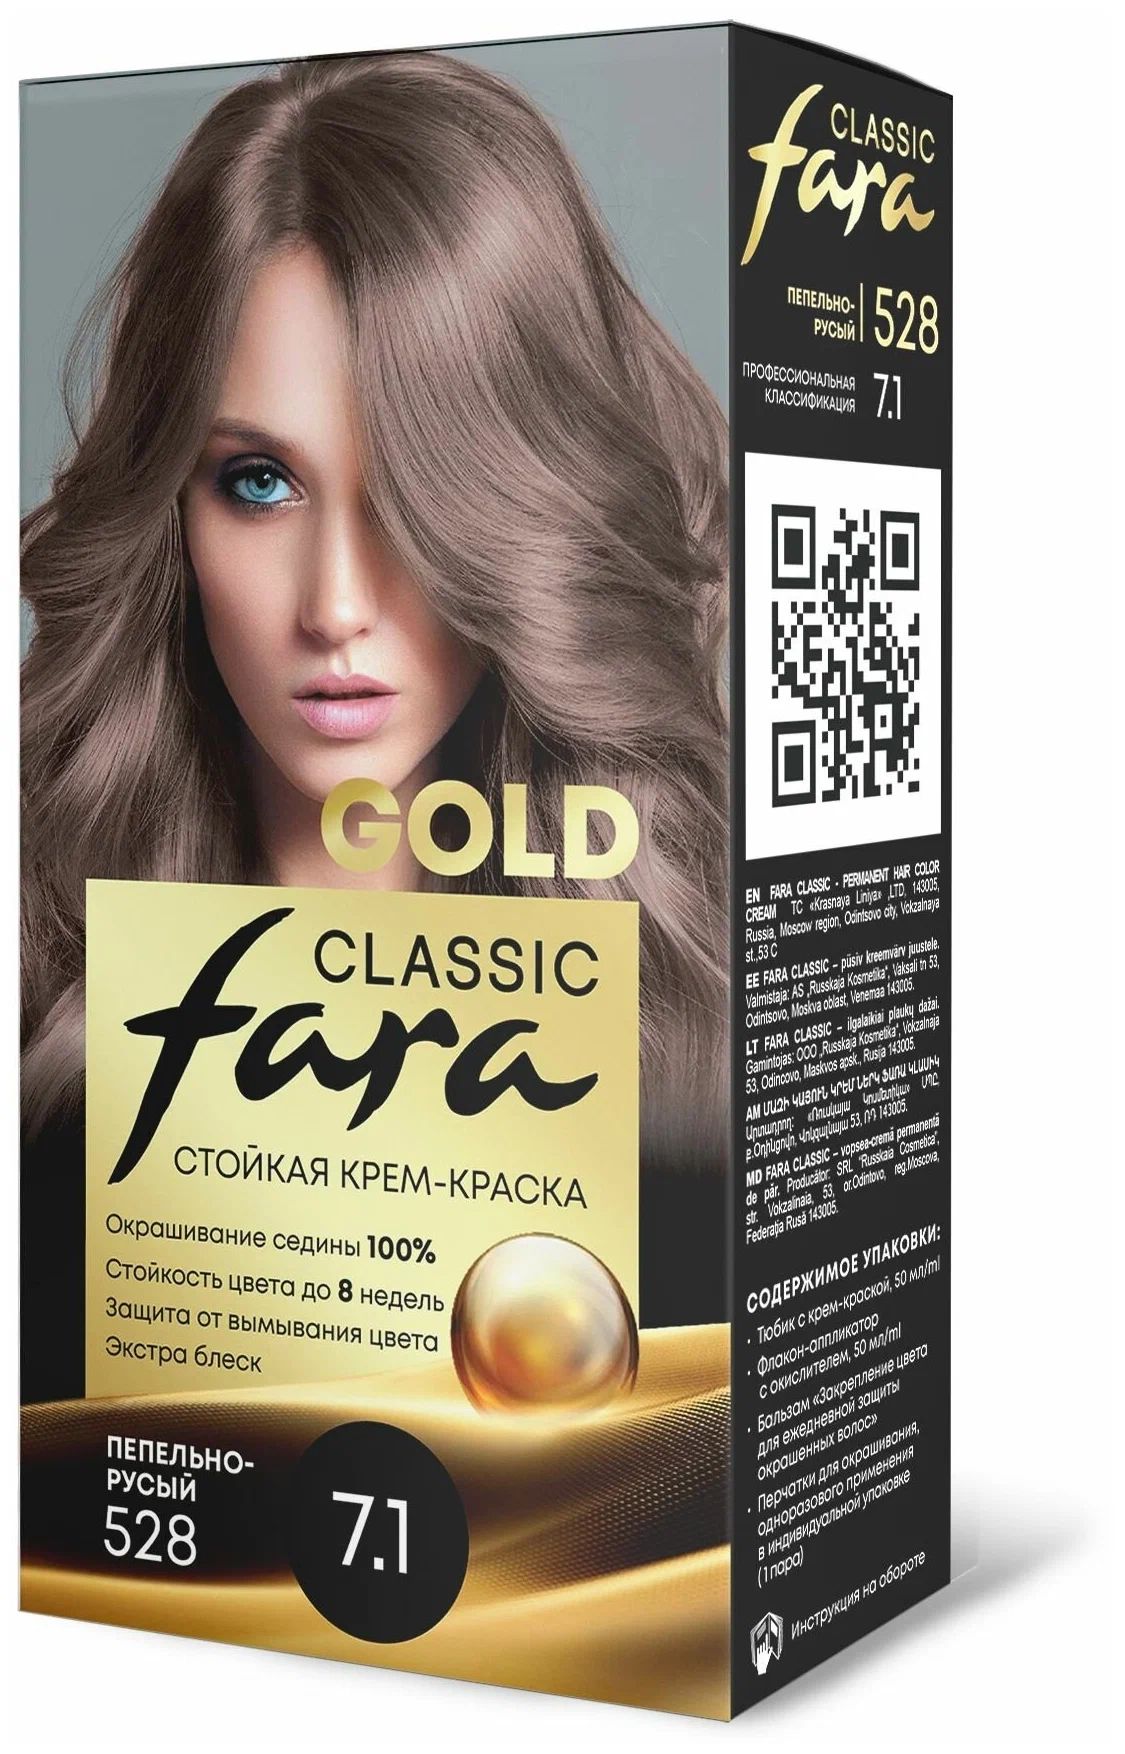 Крем-краска для волос Fara Classic Gold 528 пепельно-русый 7.1, 140 г русская поэзия xix века антология том 2